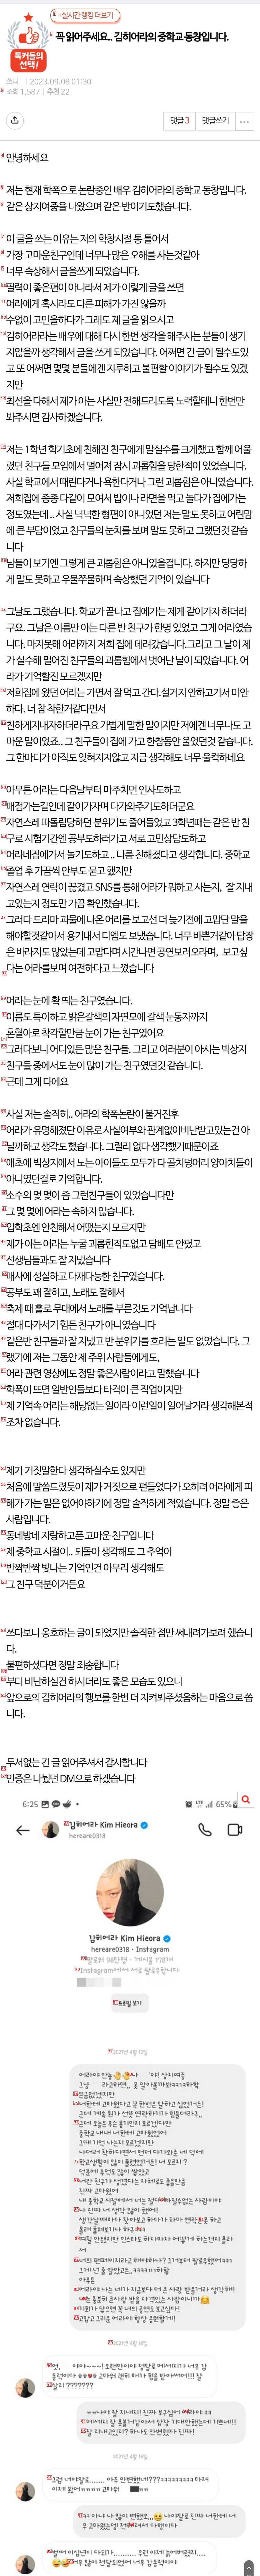 네이트판에 올라온 김히어라 동창들의 증언